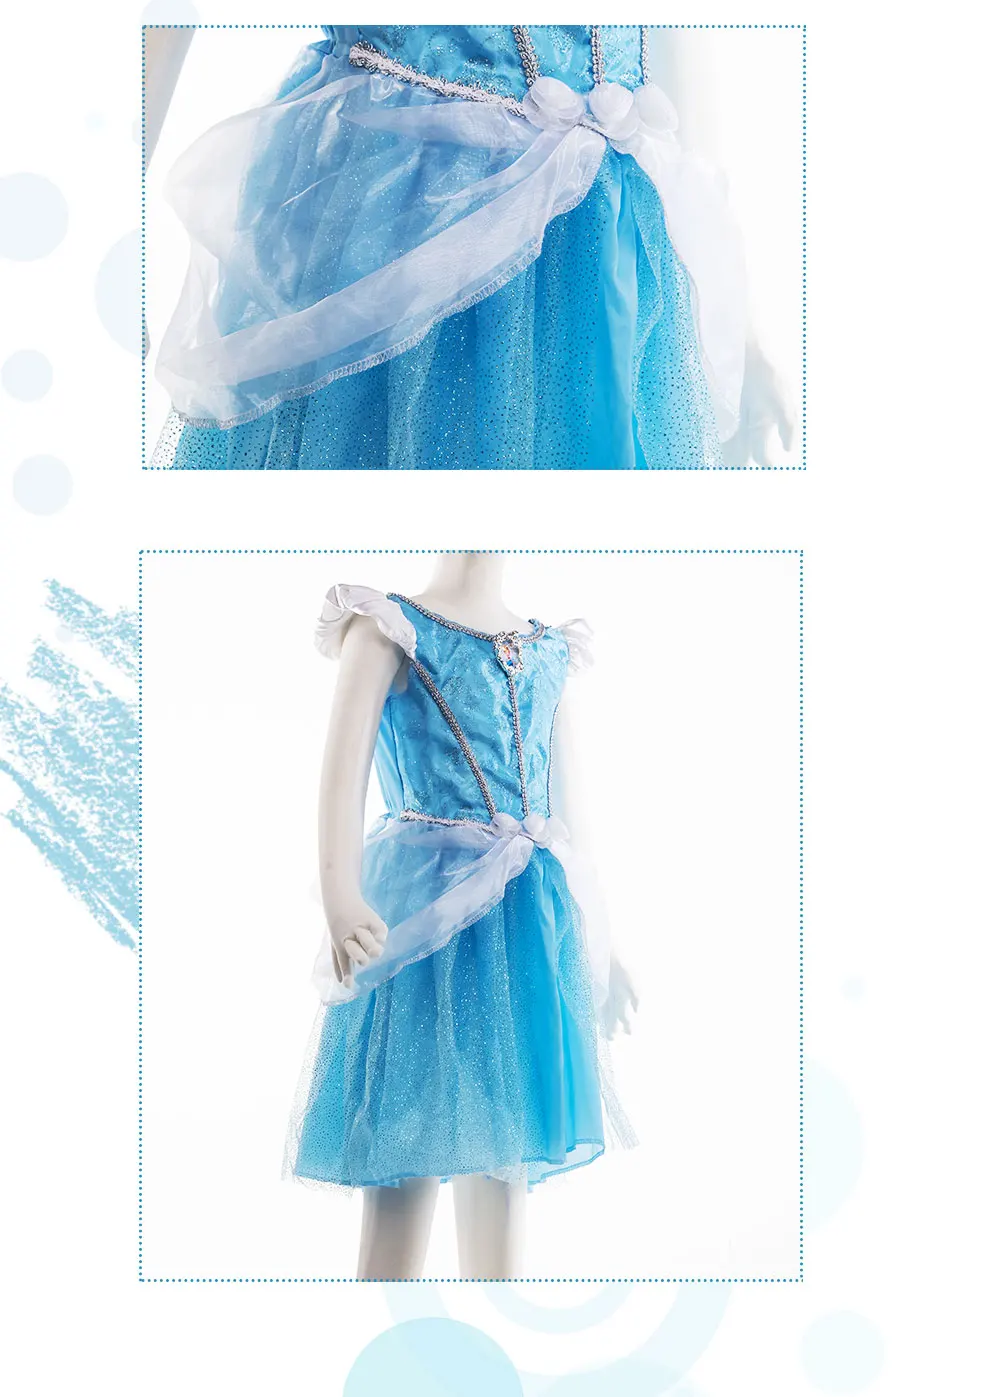 UWOWO/платья принцессы; платья Золушки; карнавальный костюм Анны и Эльзы; карнавальный костюм; детское праздничное платье для маленьких девочек